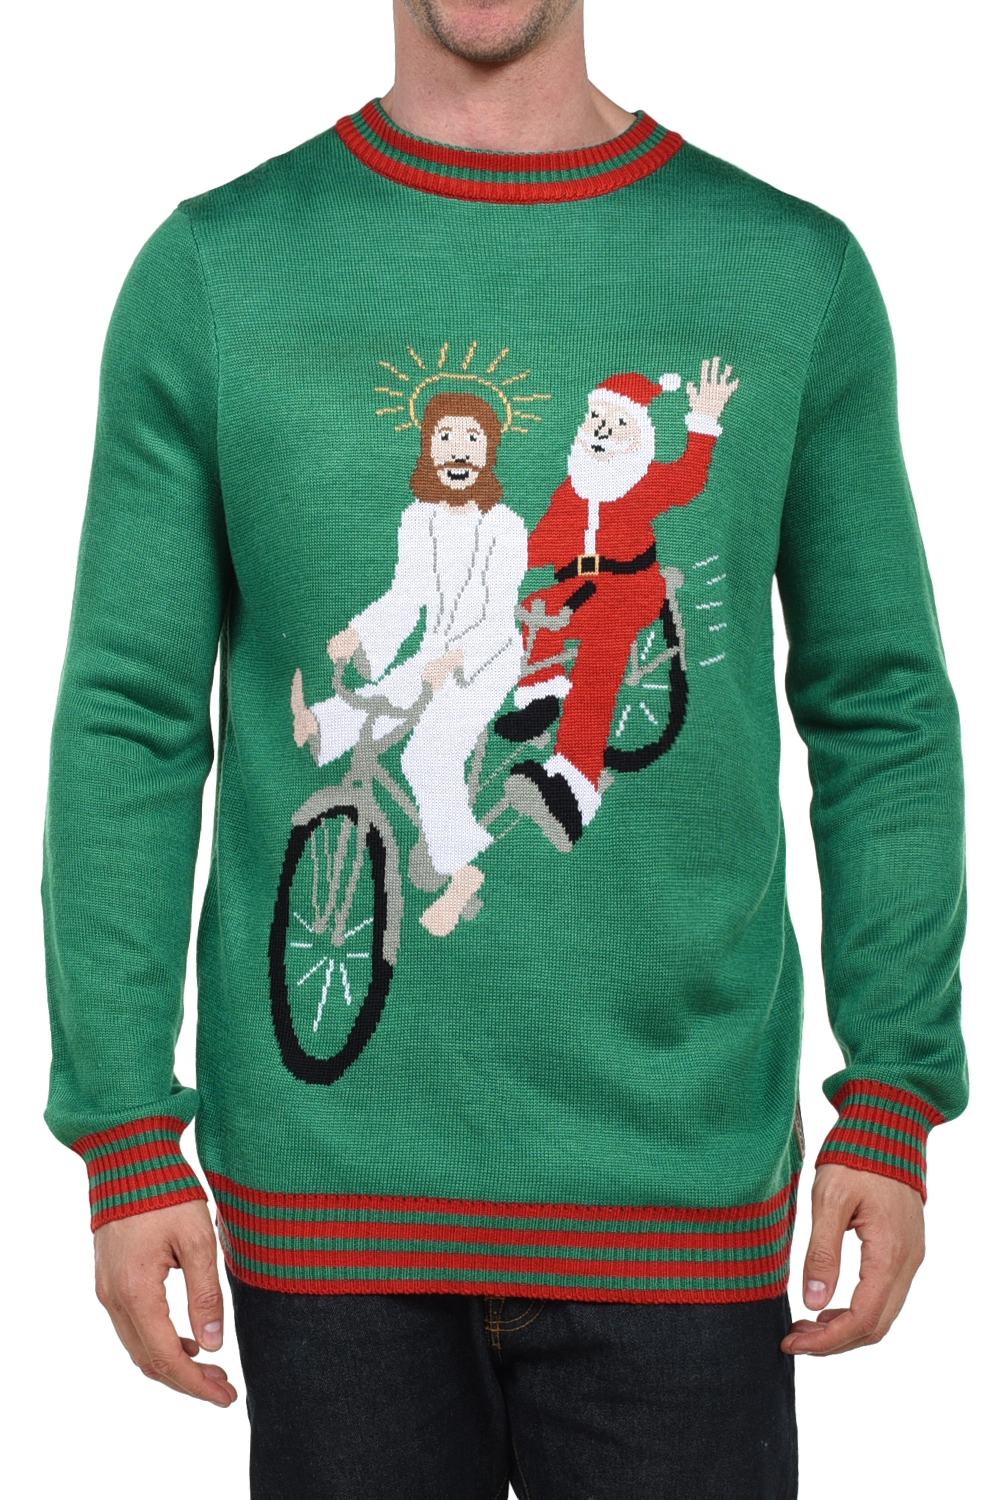 Bearded Besties Jesus and Santa Christmas Sweater Image2